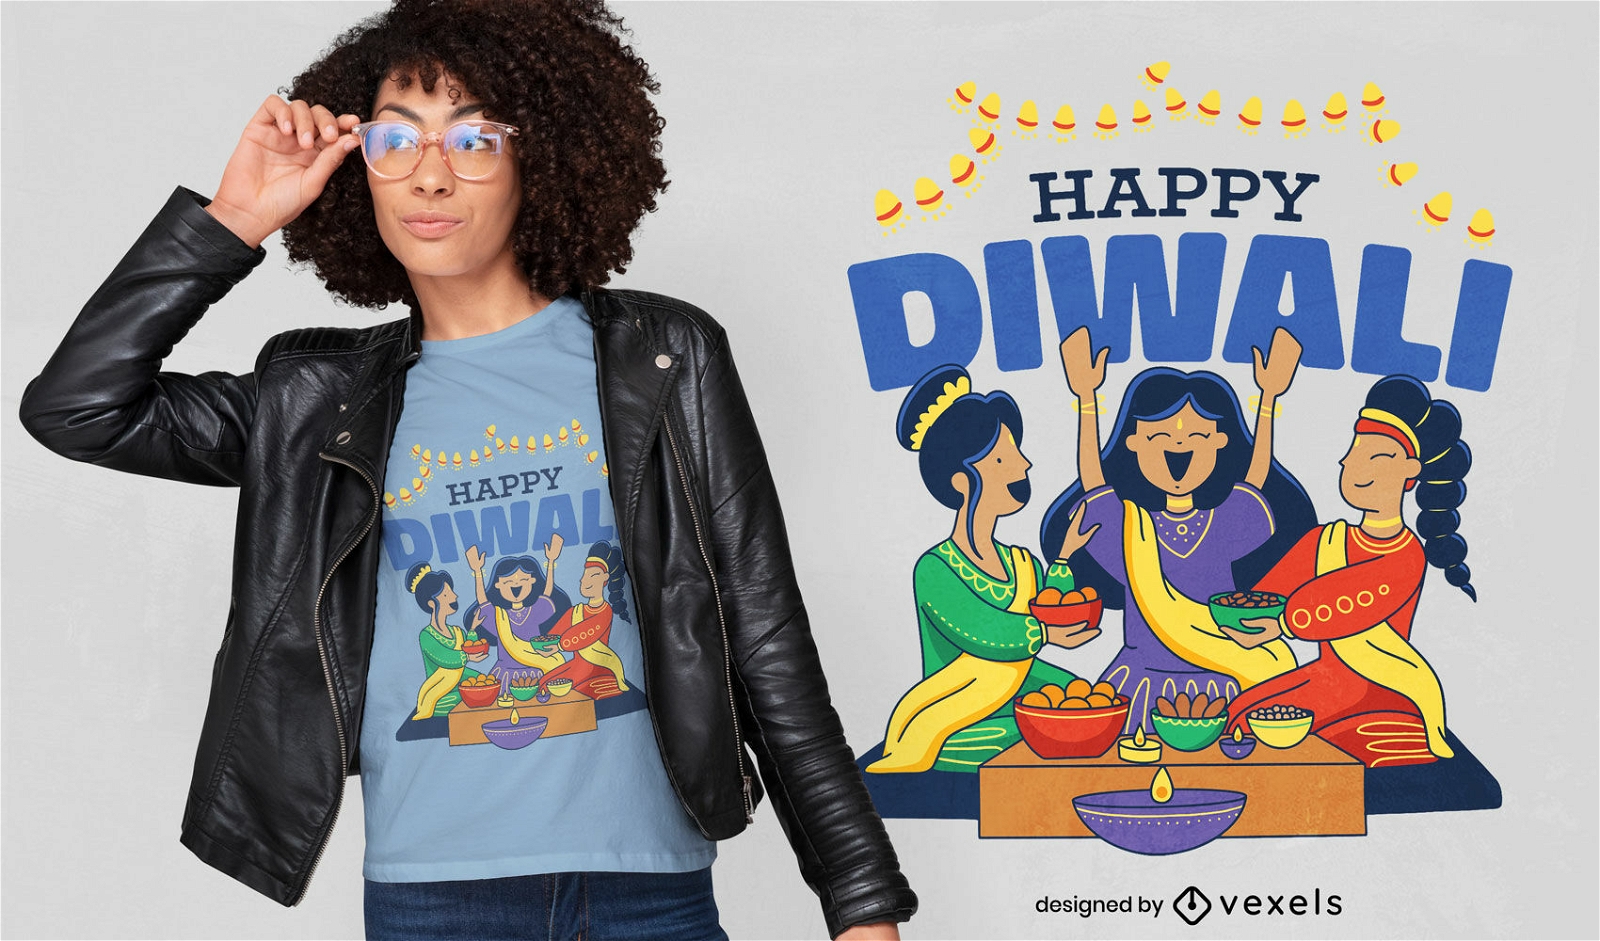 Feliz refei??o diwali e design de camisetas para pessoas